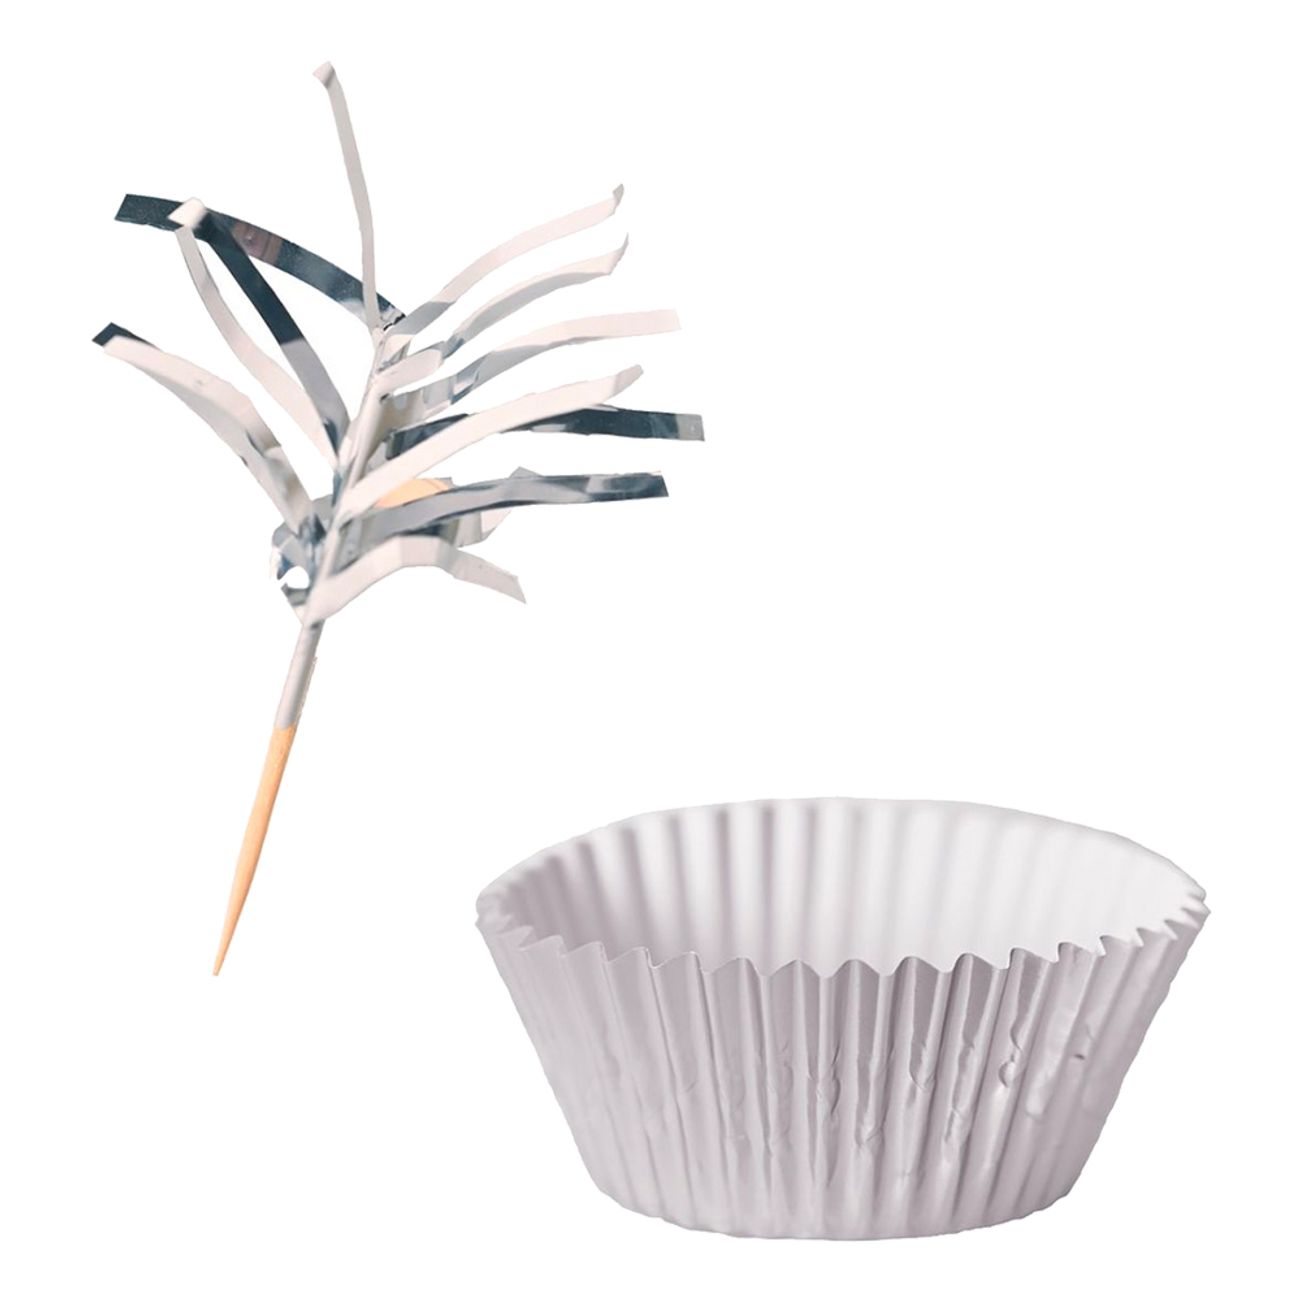 cupcake-kit-silver-metallic-87322-1